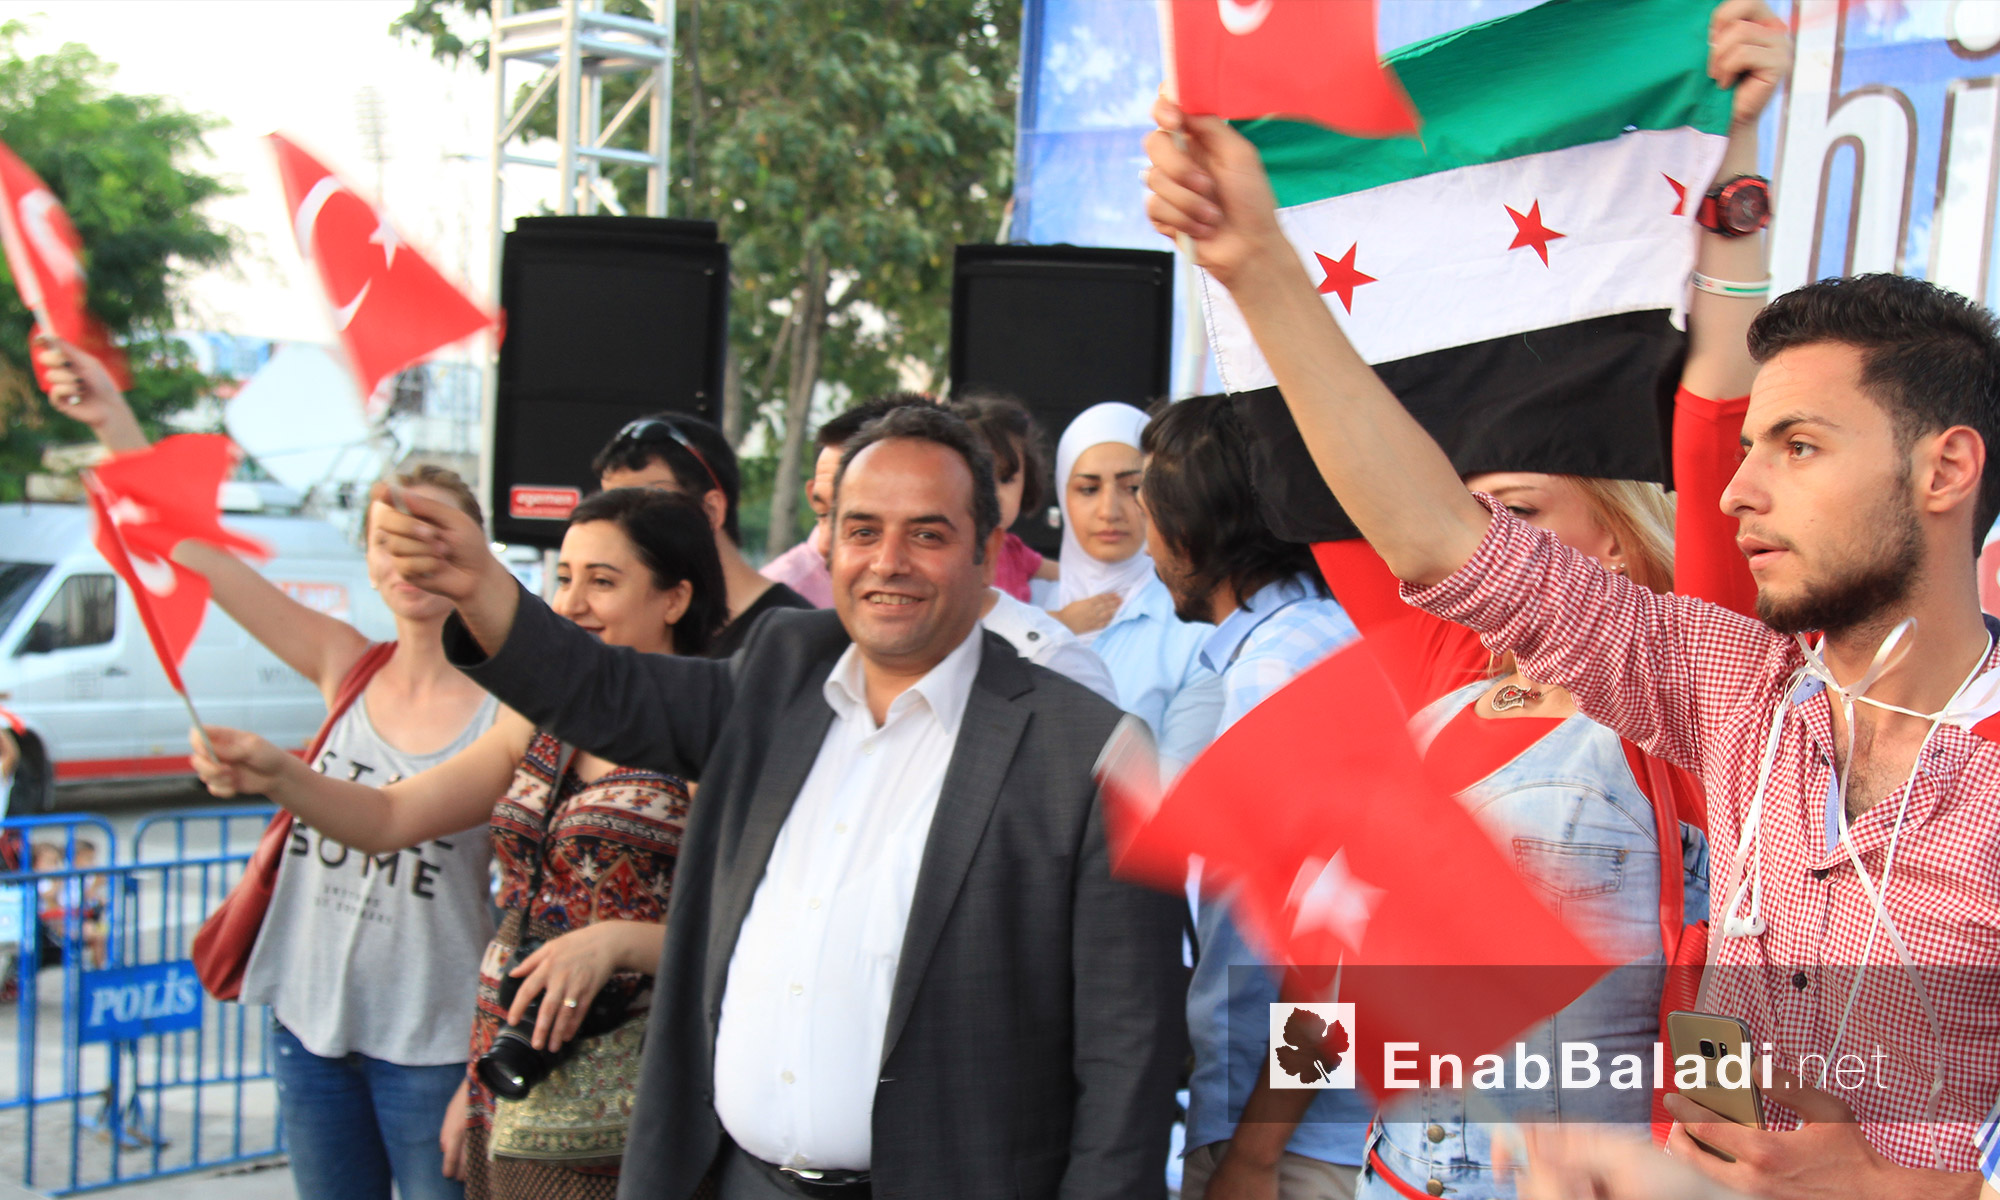  عارف كورت، رئيس جمعية الصحفيين الأتراك في مدينة غازي عنتاب داخل ساحة الديمقراطية - الاثنين 18 تموز (عنب بلدي)